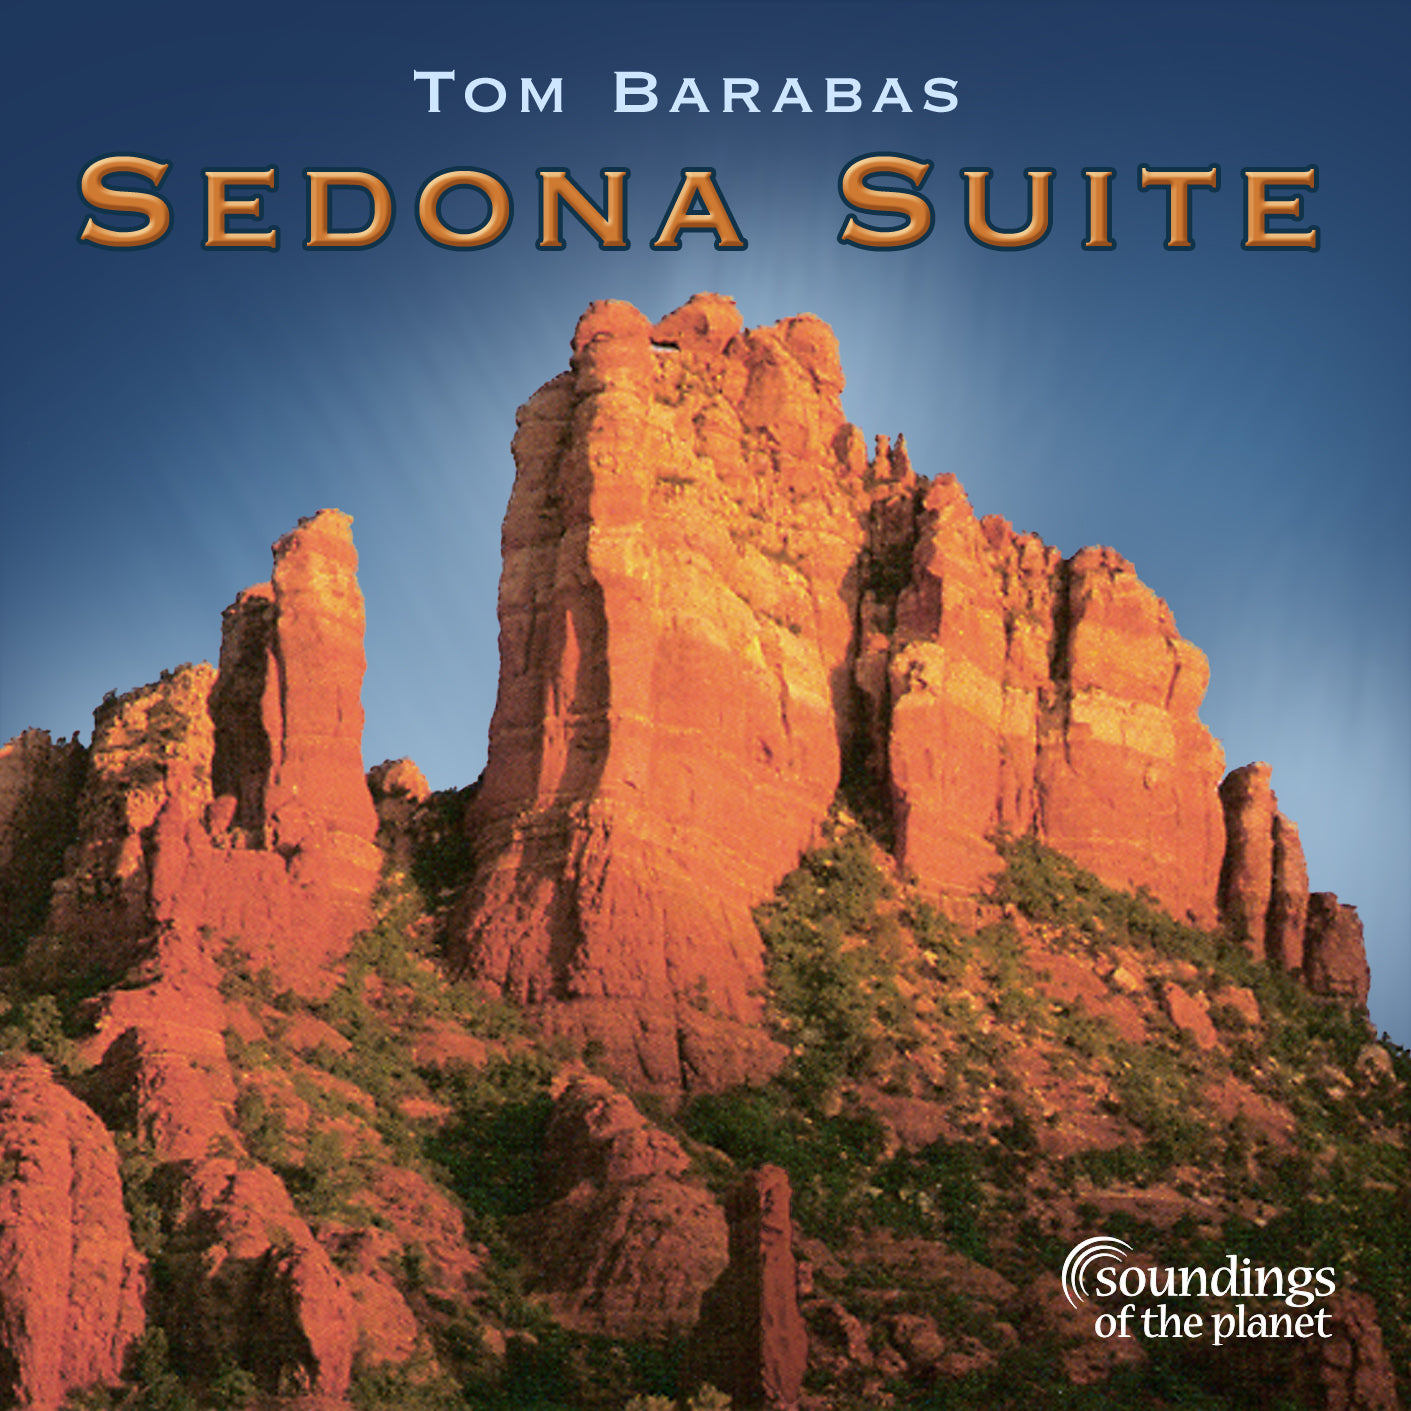 Soundings_SP-7142_Sedona Suite-cover-Tom Barabas